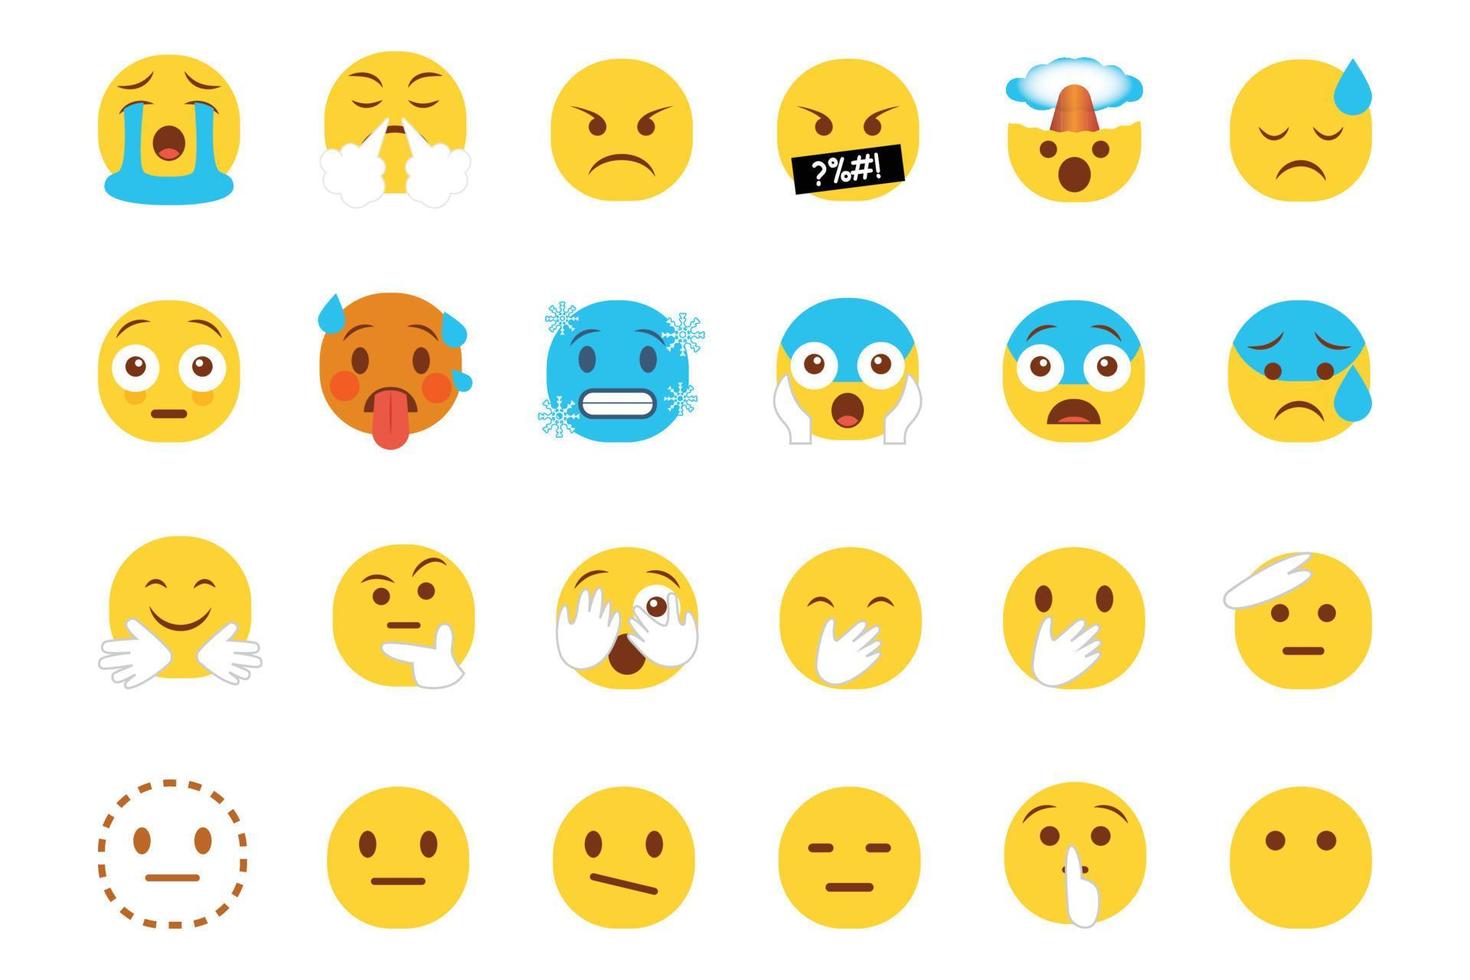 conjunto de iconos de emoticonos sonrientes. emoji de dibujos animados con sonrisa, emoción triste, feliz y plana en estilo plano vector